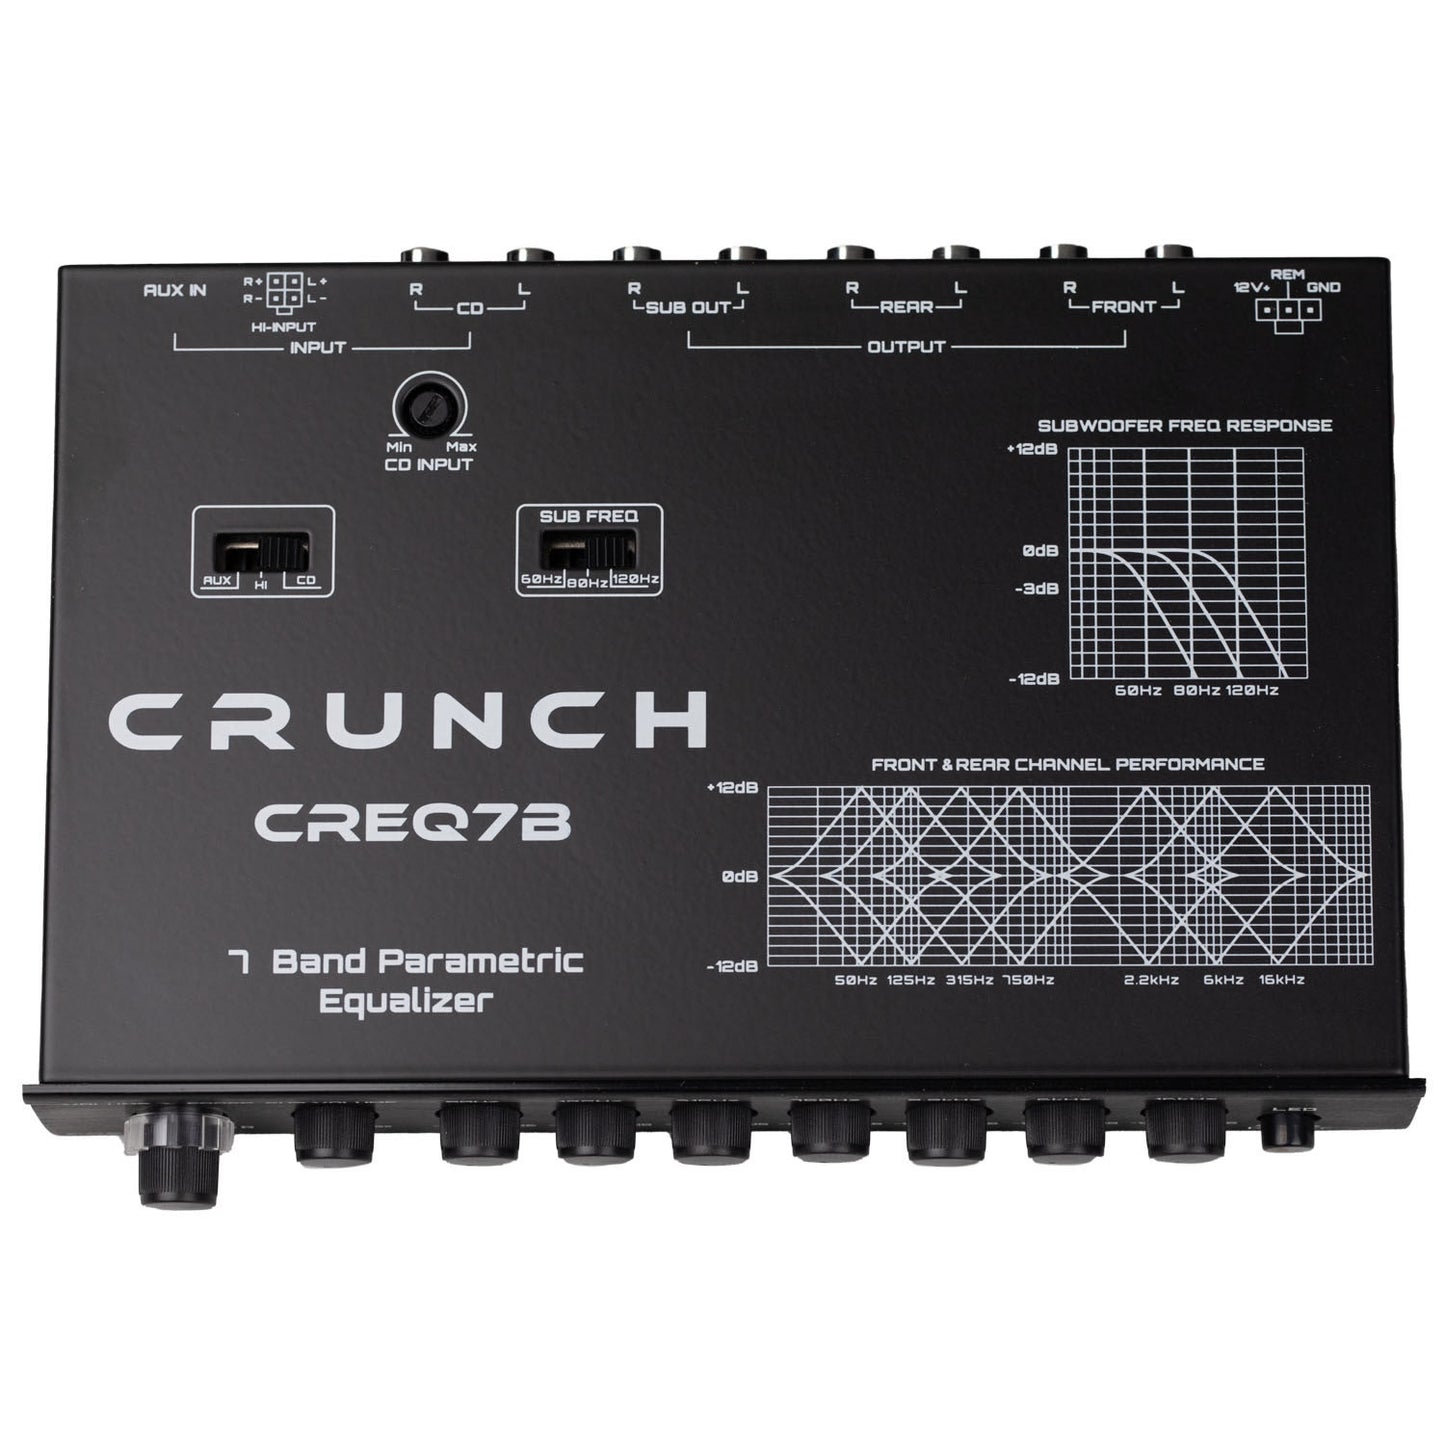 Ecualizador paramétrico 7 bandas Crunch CREQ7B